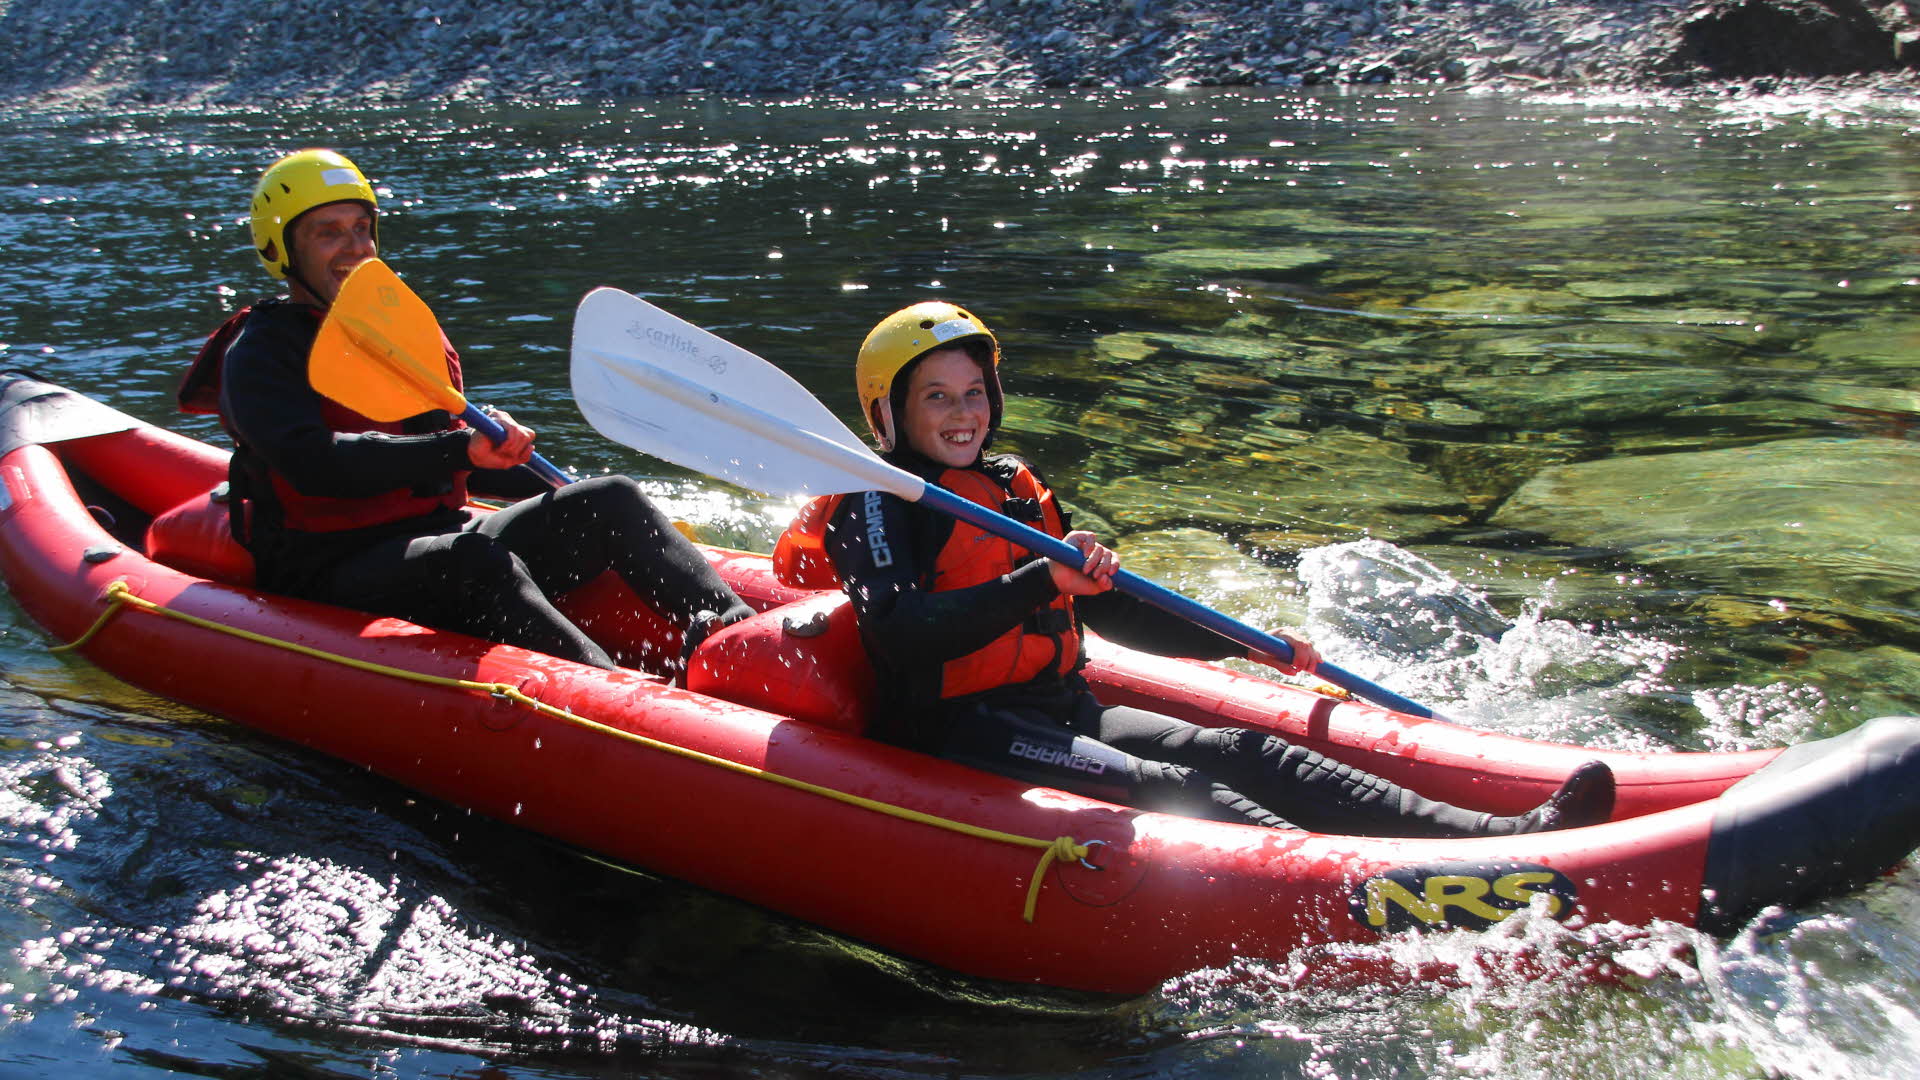 澄みきった川に浮かぶ赤いラフトの上で微笑む少年たち。手にはパドルを持ち、ライフジャケット、ヘルメット、ウェットスーツを着用。